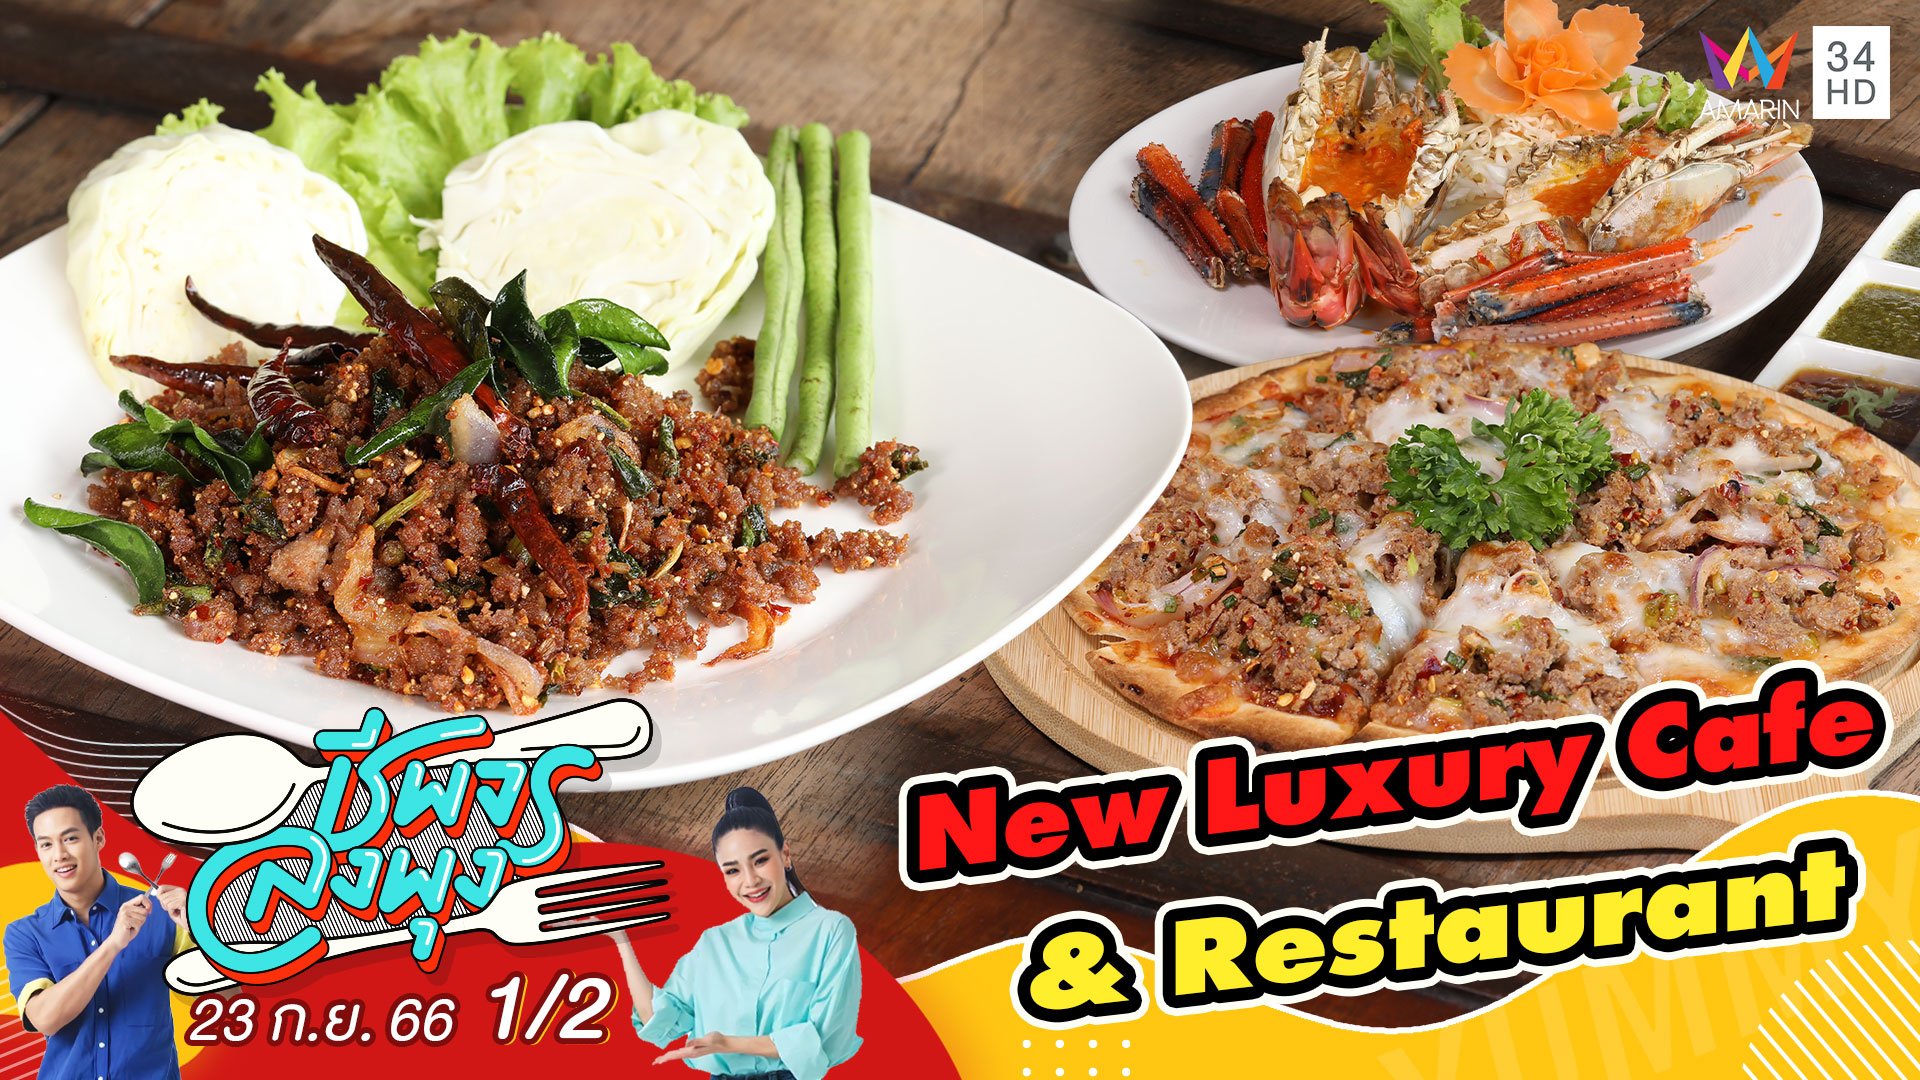 ร้าน New Luxury Cafe & Restaurant | ชีพจรลงพุง | 23 ก.ย. 66 (1/2) | AMARIN TVHD34